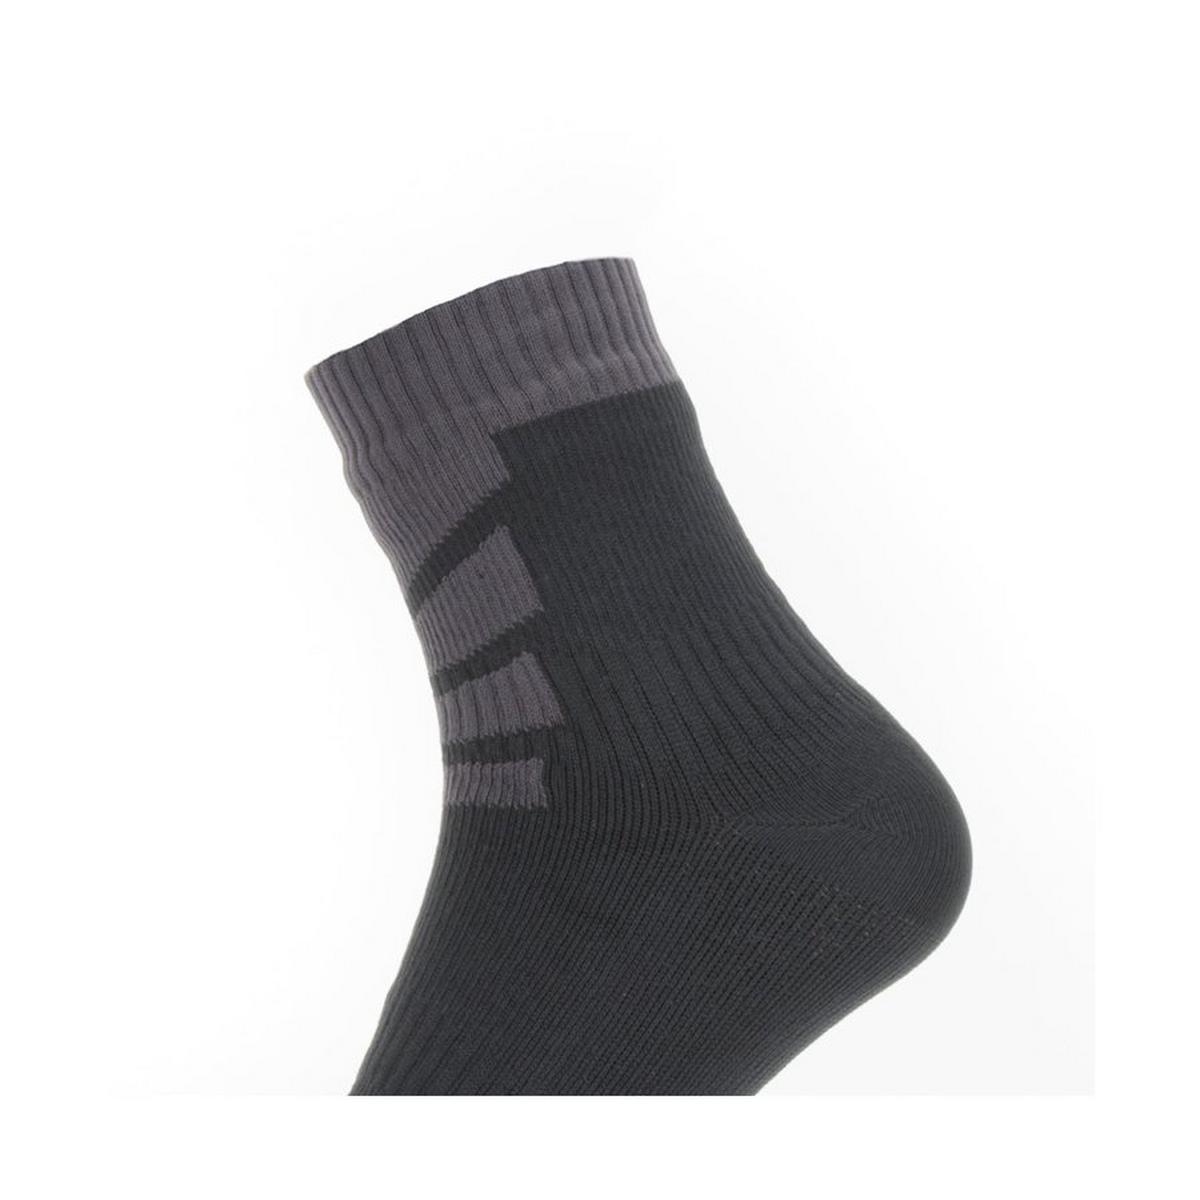 Sealskinz Waterproof Warm Weather Ankle Sock - Black